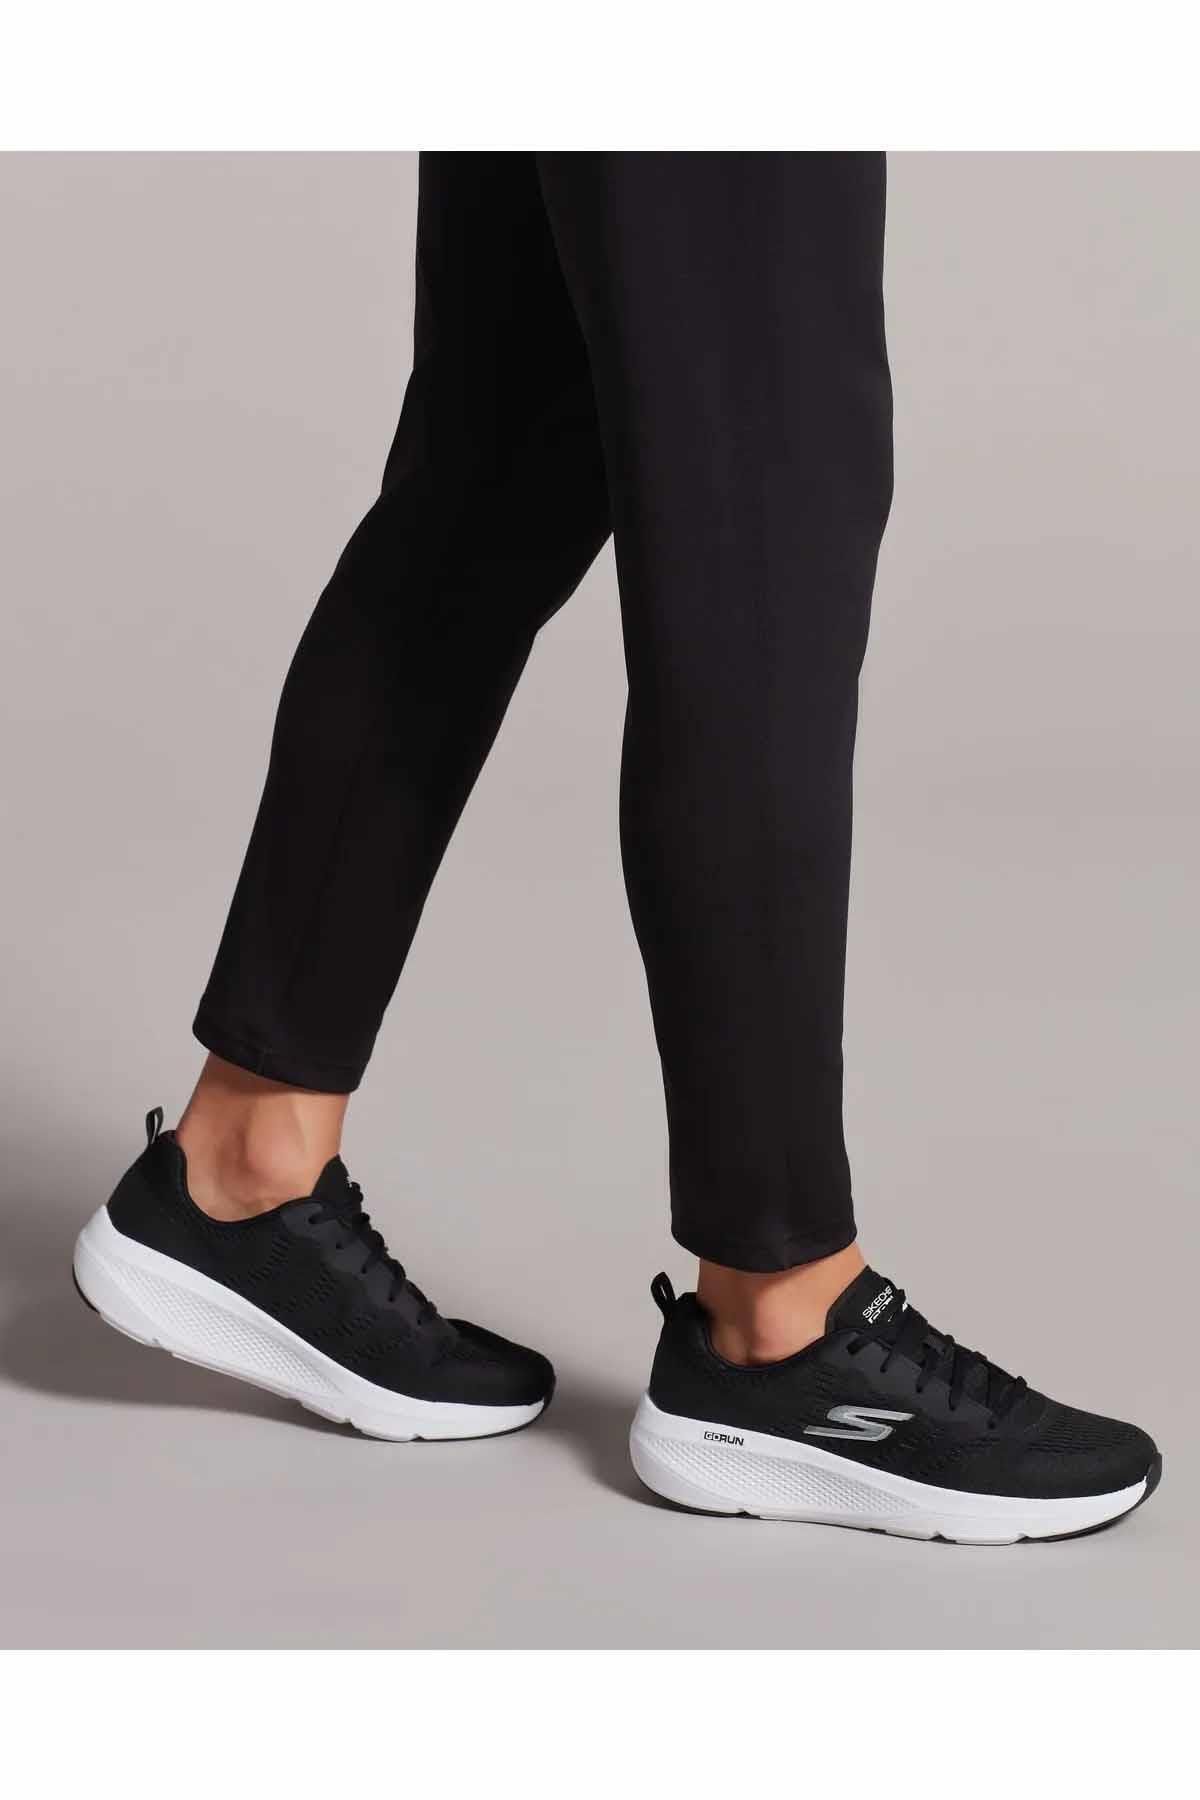 Skechers Go Run Elevate Kadın Günlük Spor Ayakkabı 128319 Blk Siyah